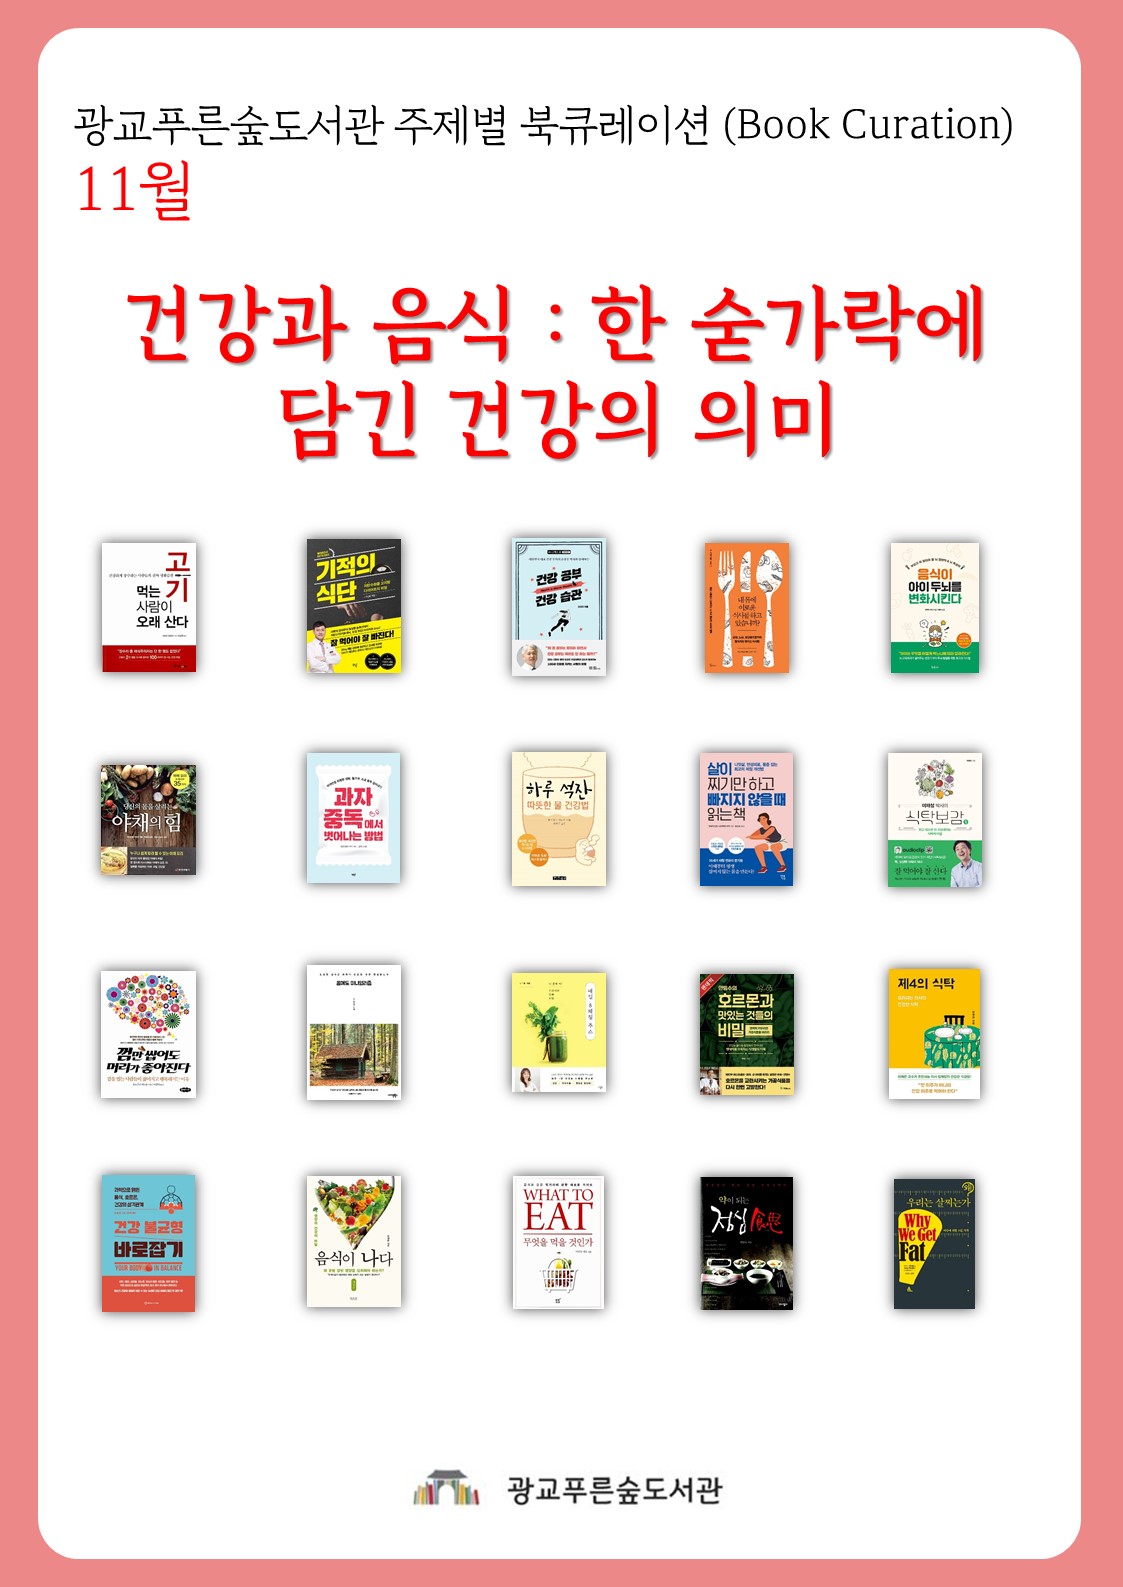 광교푸른숲도서관주제별북큐레이션안내문(11월).jpg